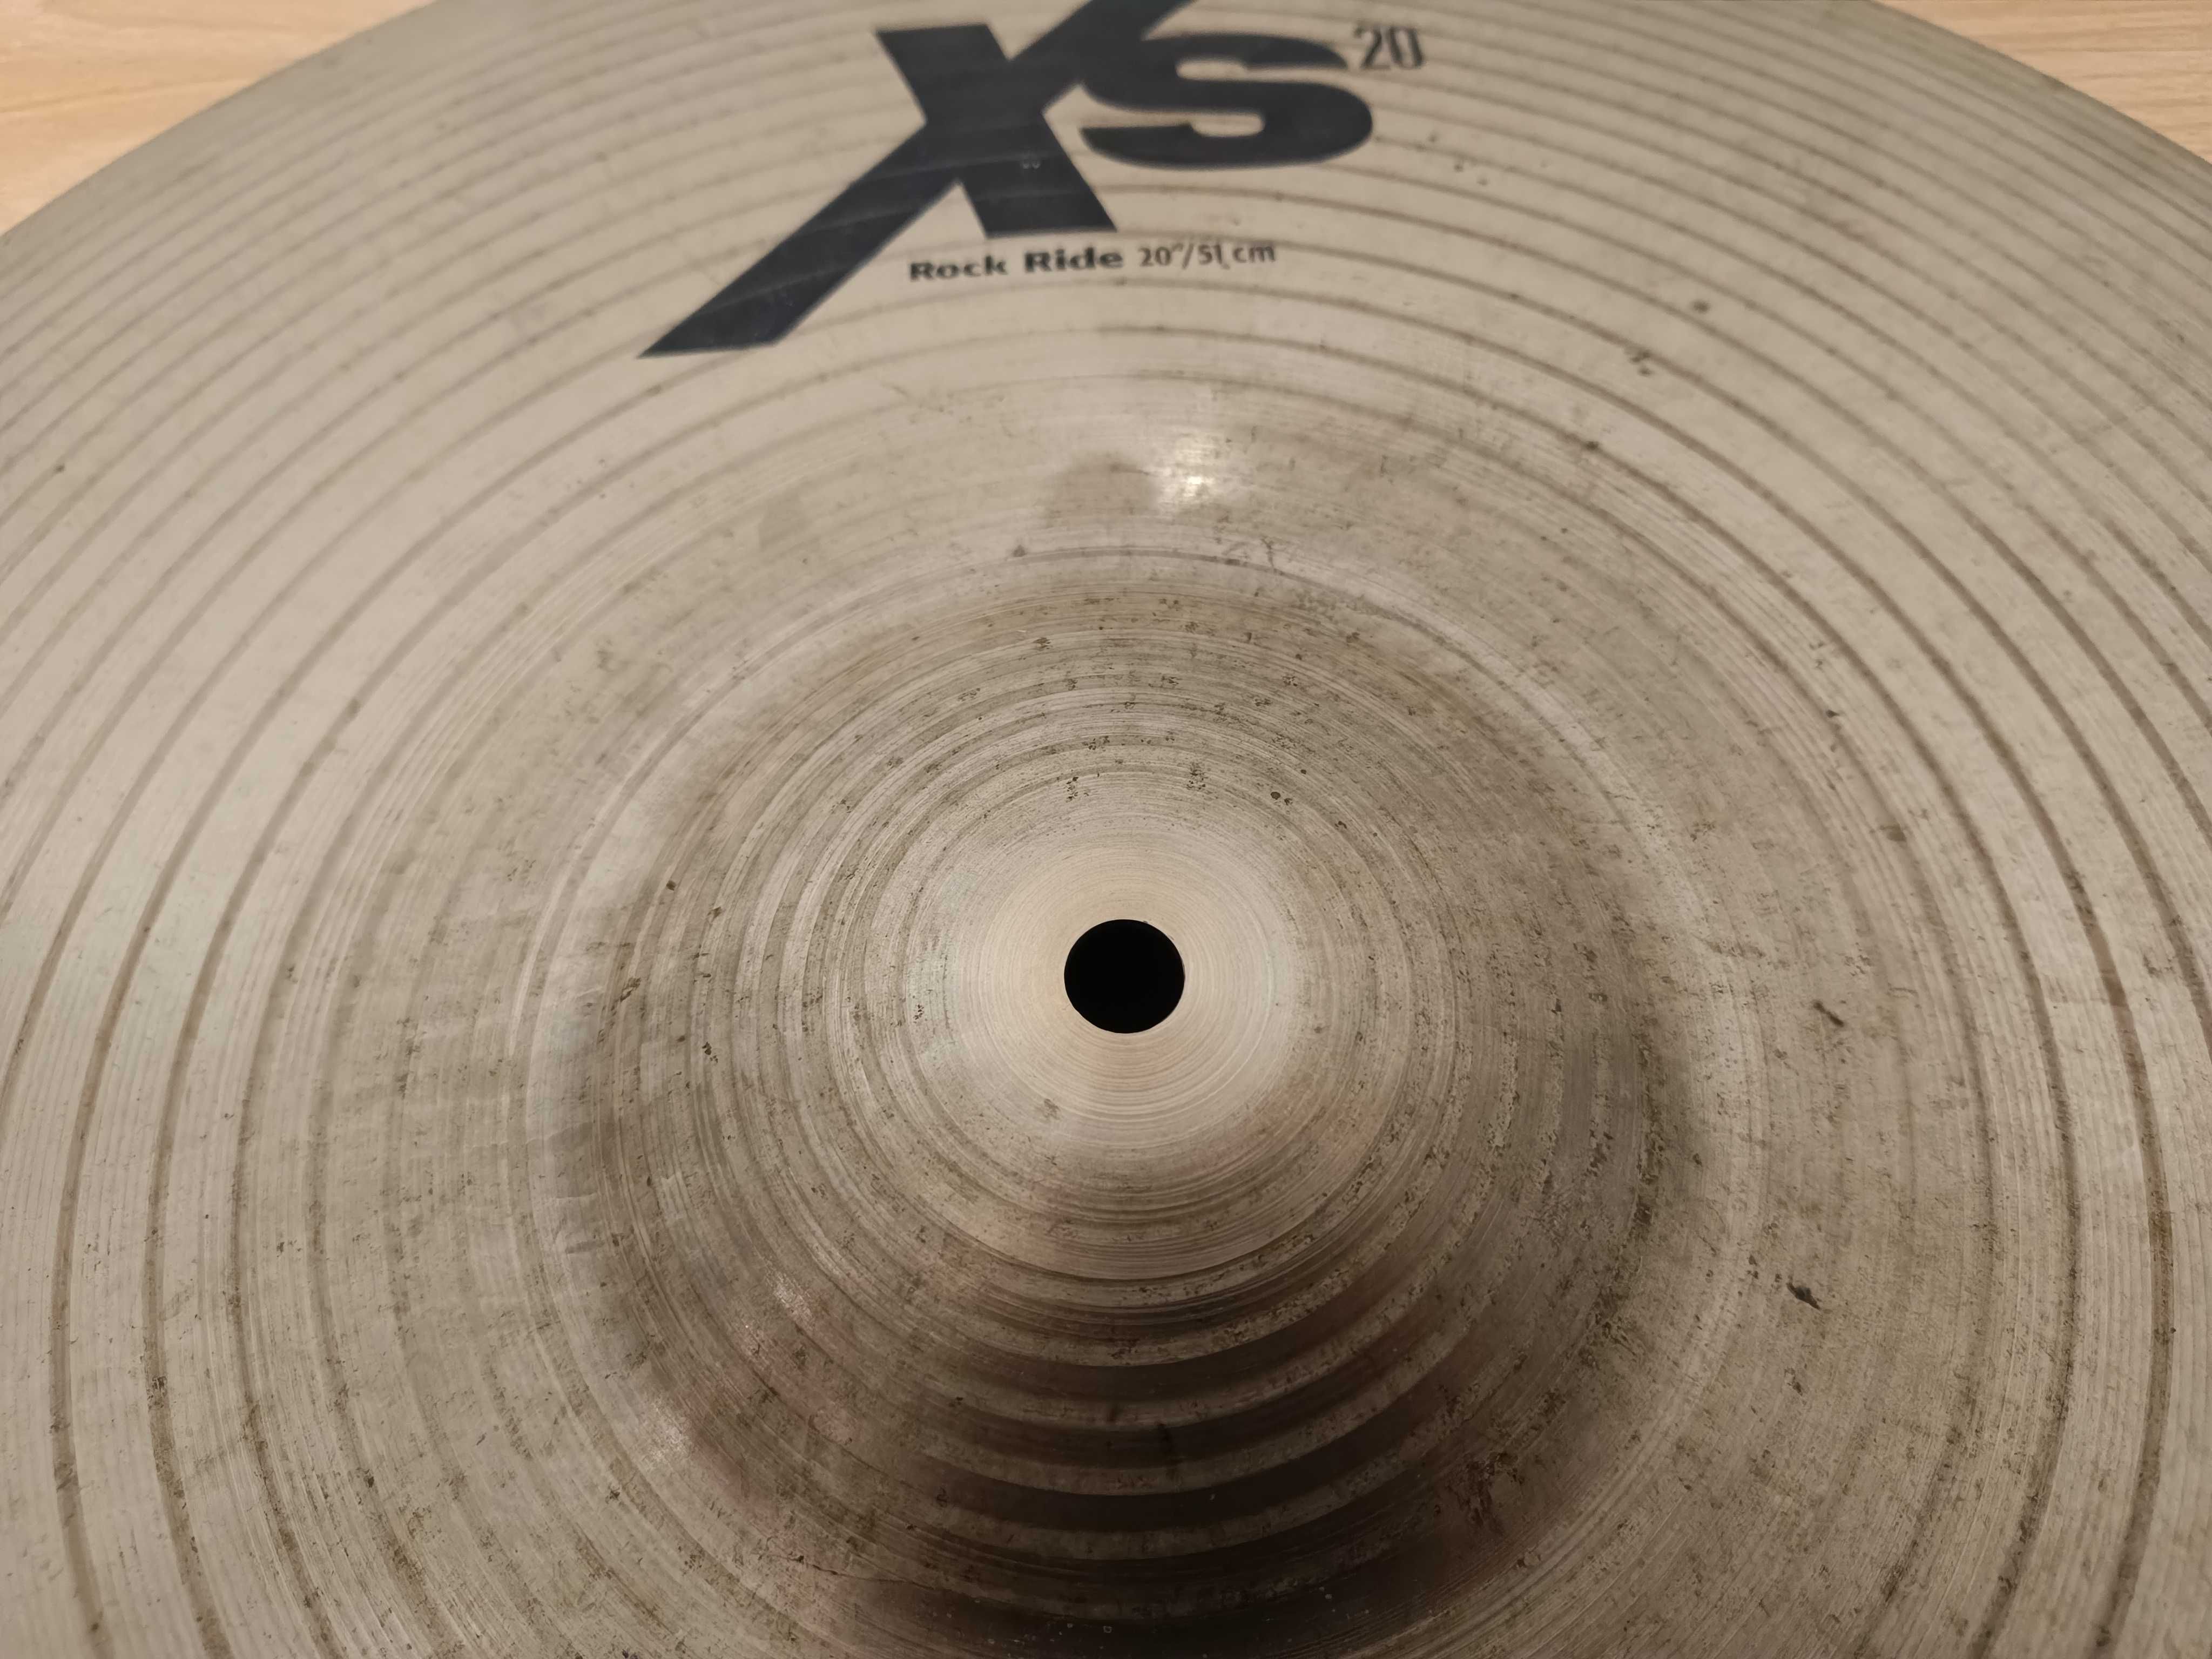 Sabian XS20 talerz perkusyjny Ride